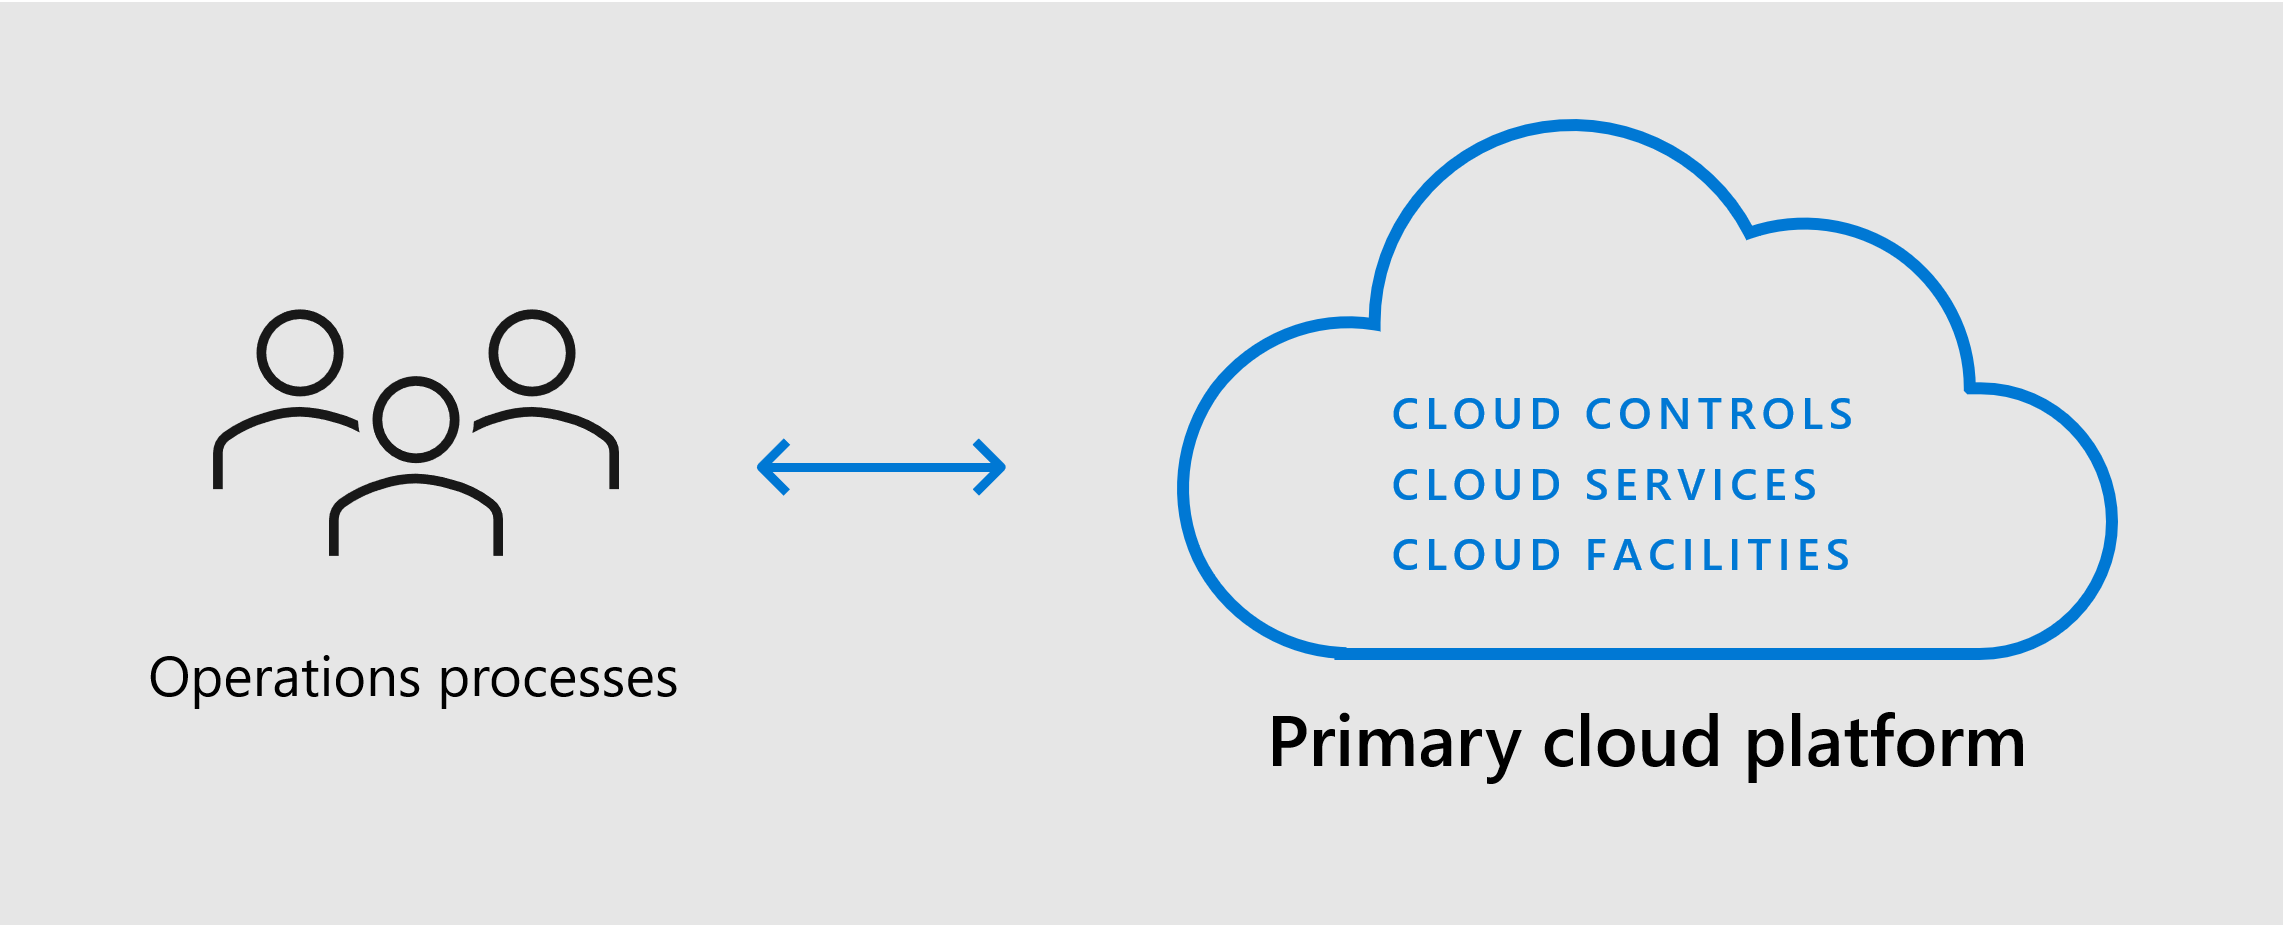 Diagrama que mostra a plataforma de nuvem primária com instalações, serviços e controles para dar suporte aos seus processos.